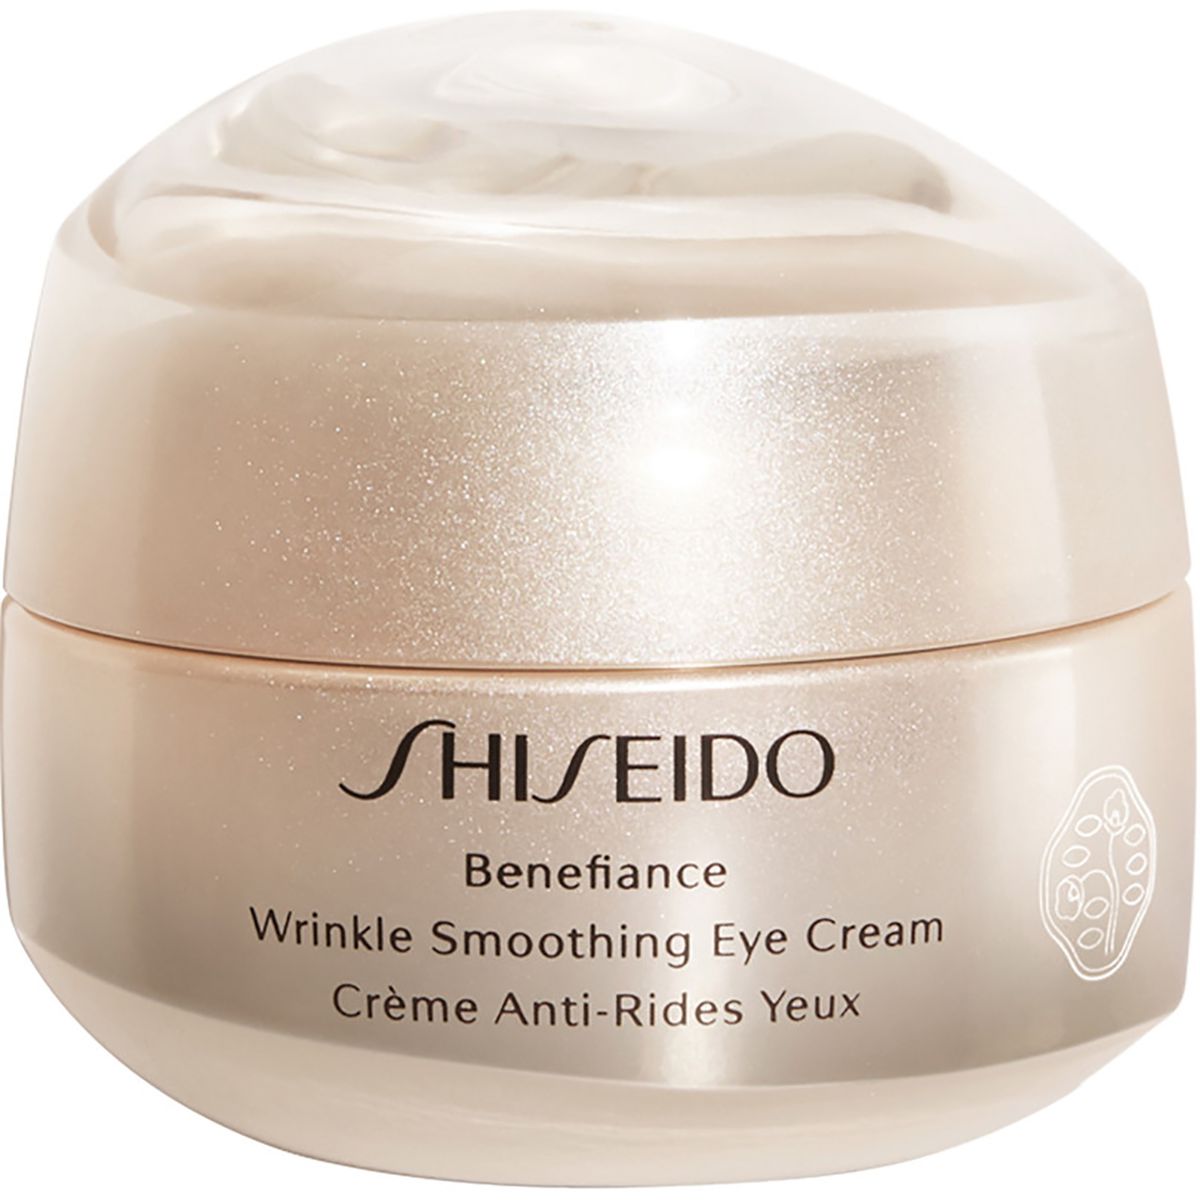 Shiseido’s Wrinkle Smoothing Eye Cream